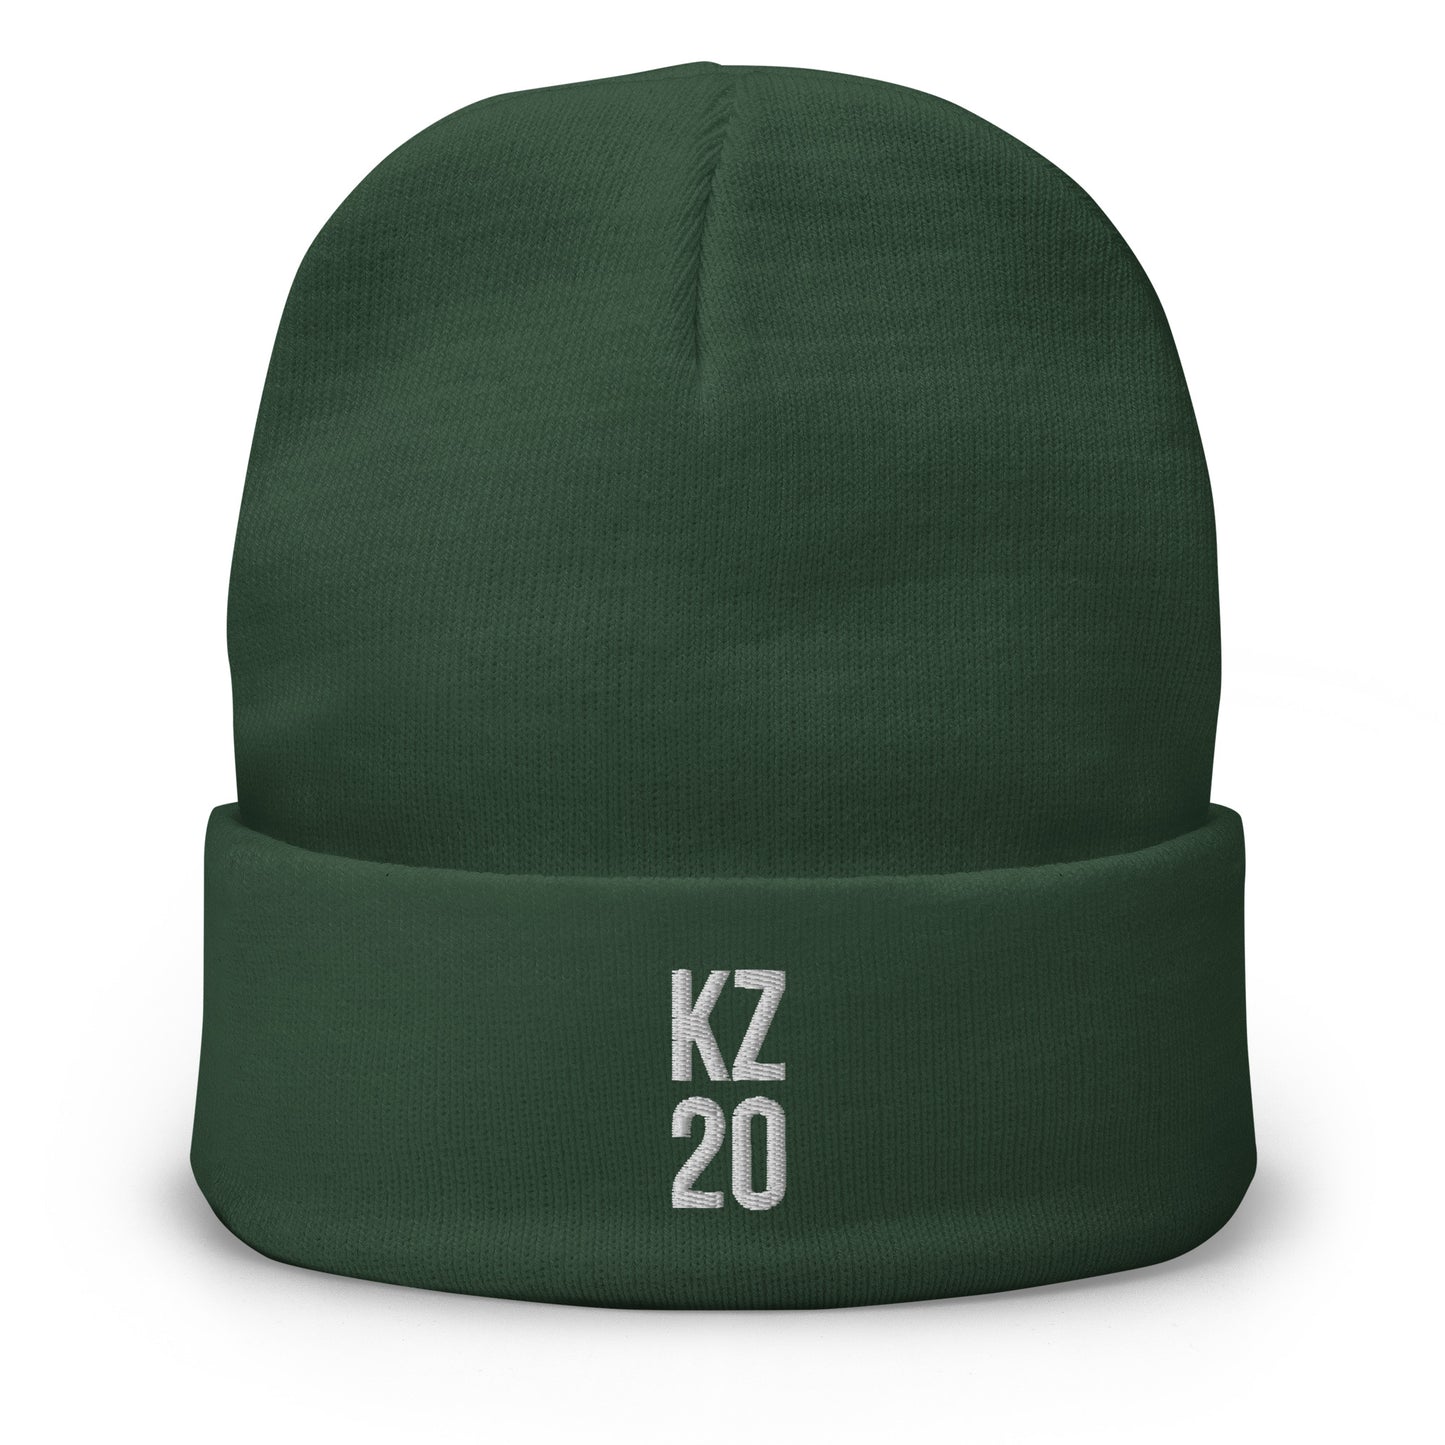 KZ 20 Embroidered Beanie